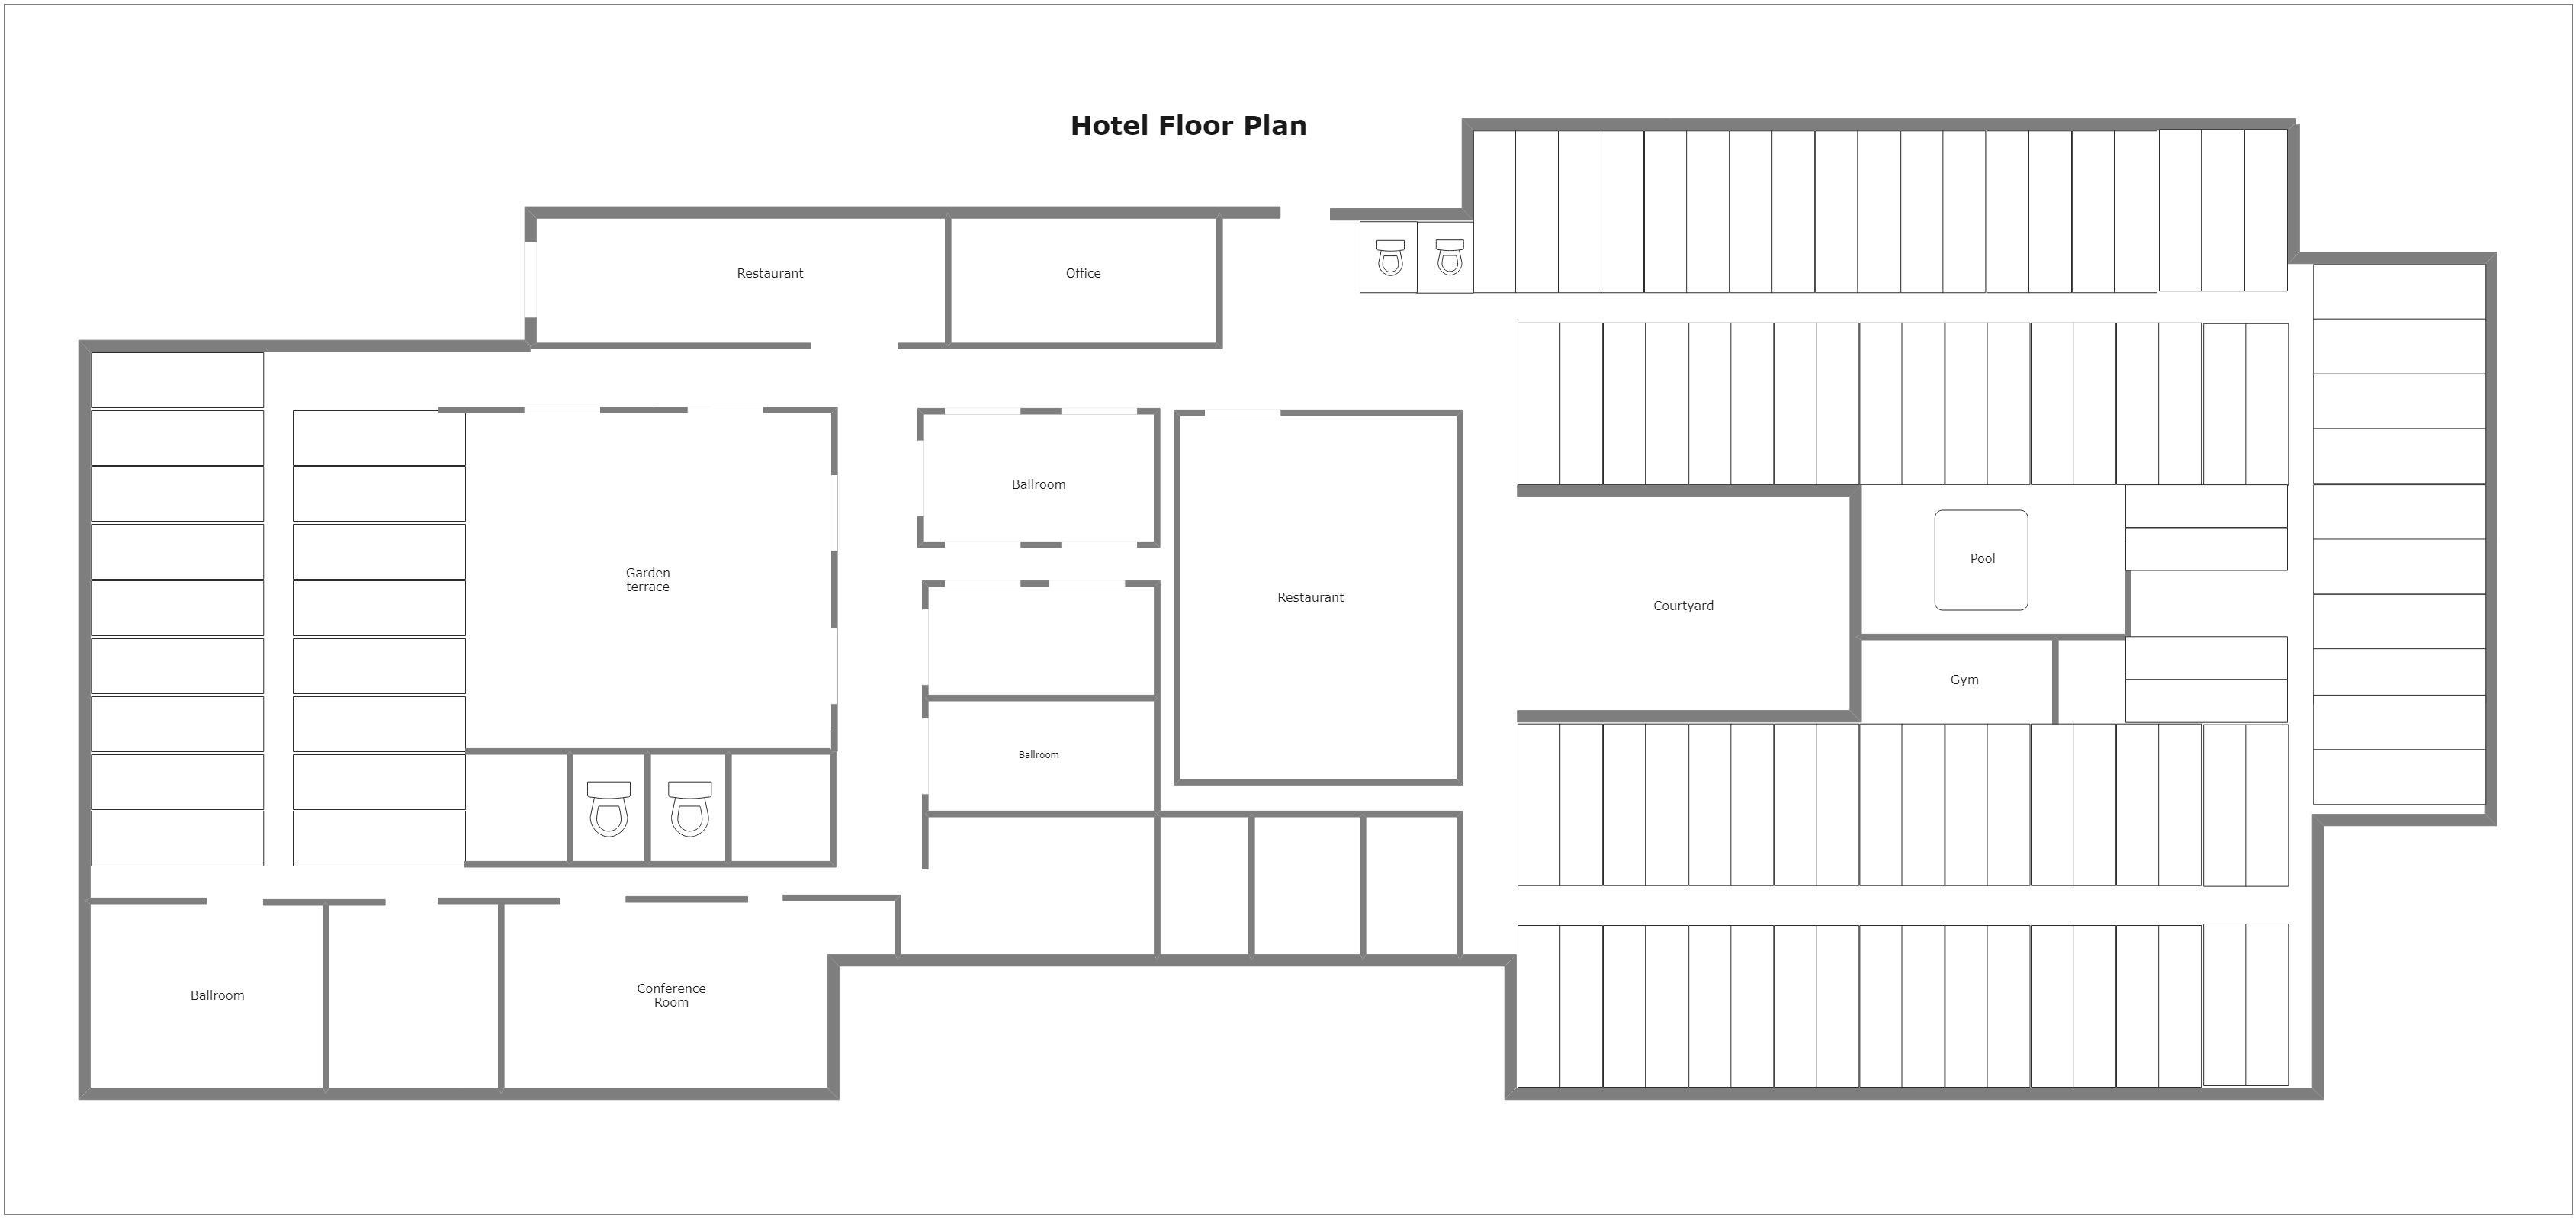 Hotel Floor Plan Example